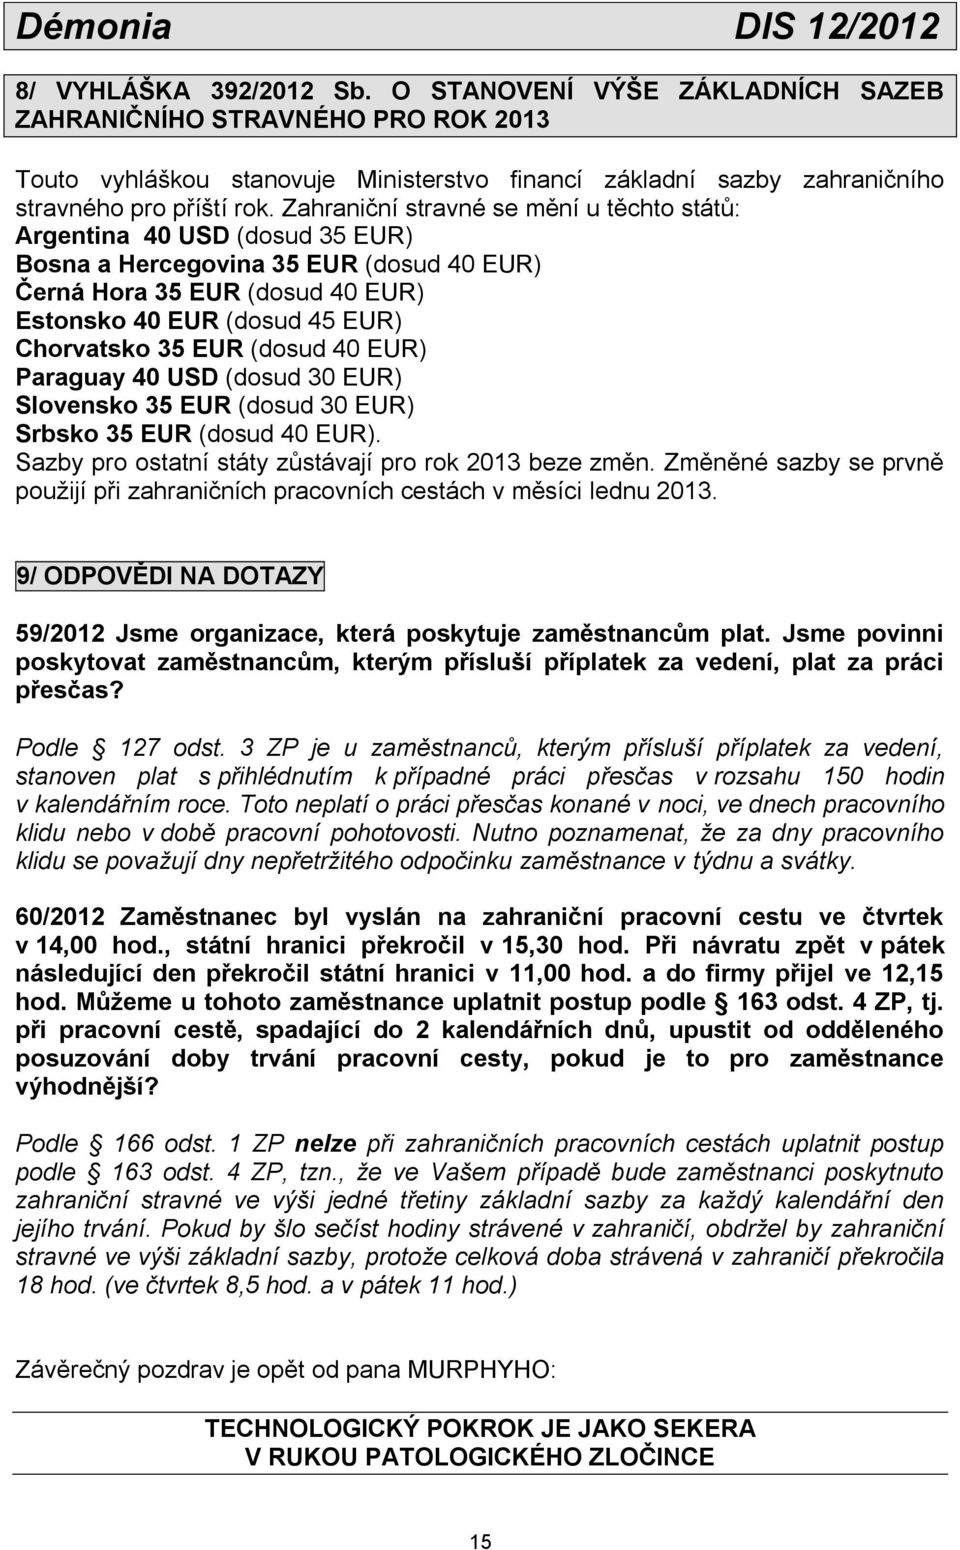 Zahraniční stravné se mění u těchto států: Argentina 40 USD (dosud 35 EUR) Bosna a Hercegovina 35 EUR (dosud 40 EUR) Černá Hora 35 EUR (dosud 40 EUR) Estonsko 40 EUR (dosud 45 EUR) Chorvatsko 35 EUR